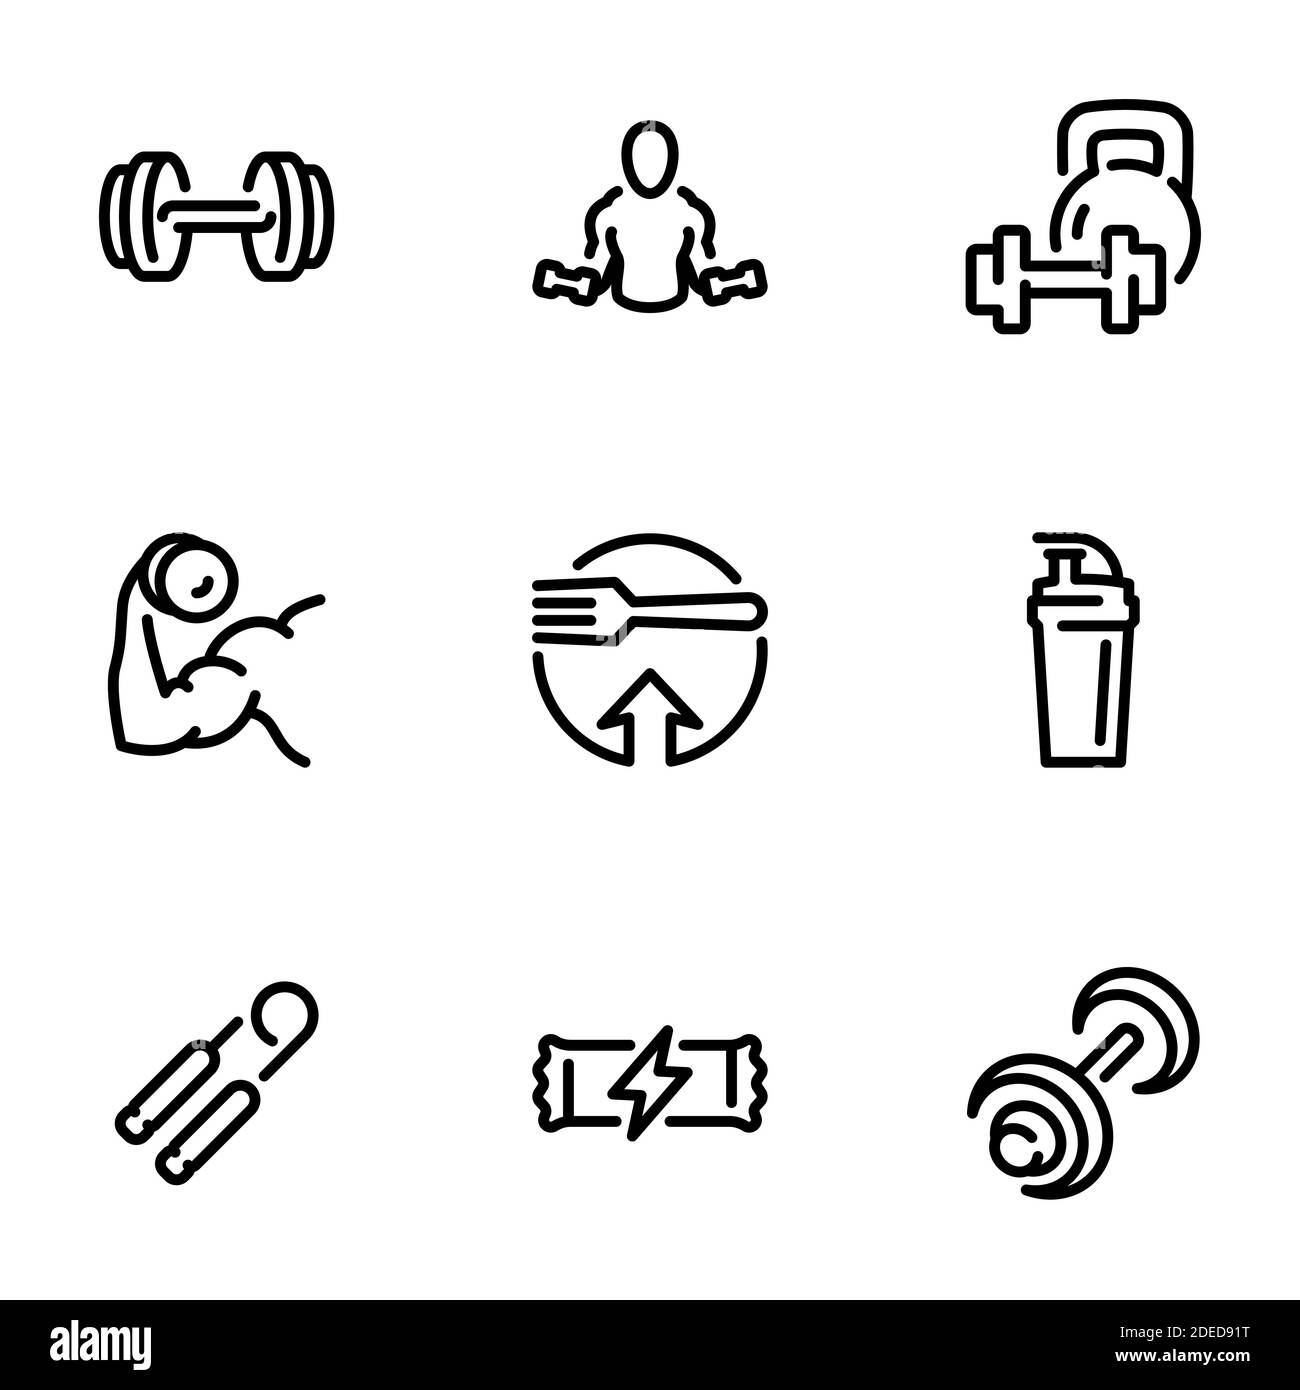 Ensemble d'icônes vectorielles noires, isolées sur fond blanc, sur le thème Bodybuilding, fitness et nutrition sportive Illustration de Vecteur